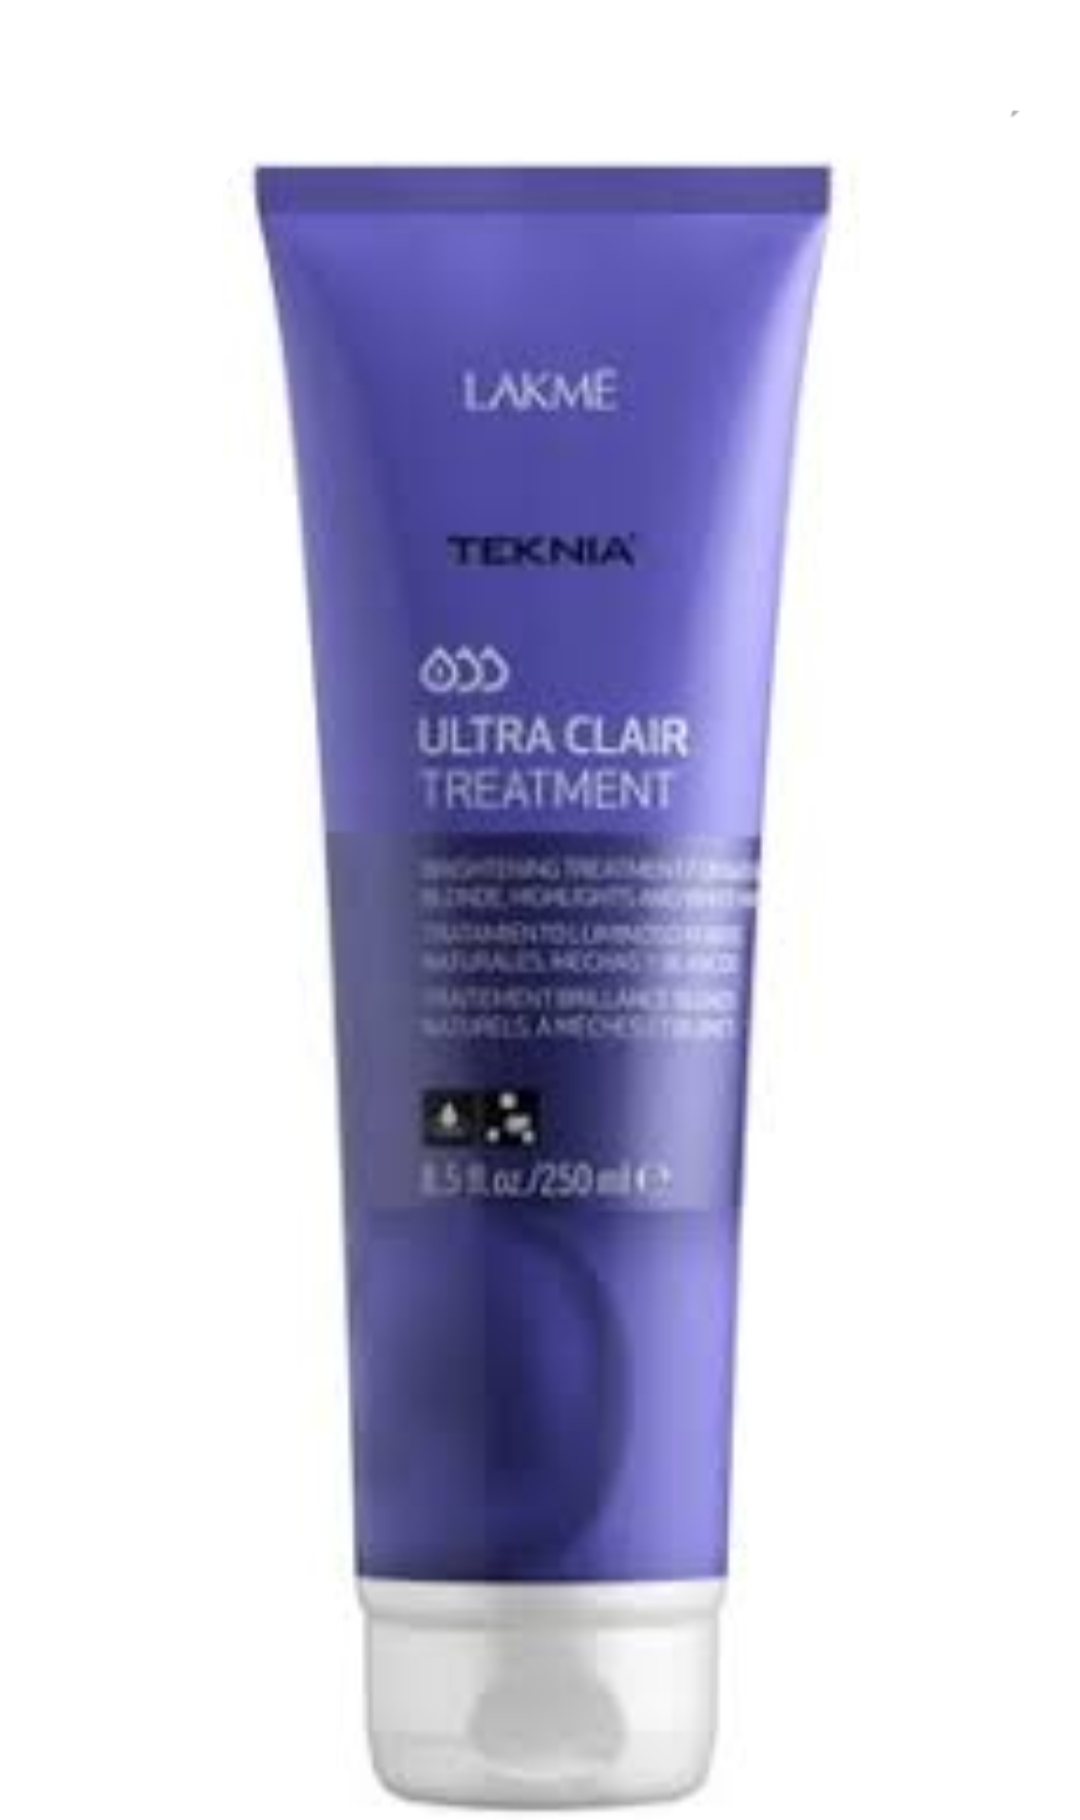 فراورده های حالت دهنده ،نرم کننده وتثبیت کننده آرایش مو (کرمها ، لوسیونها وروغنها) LAKME N.TEKNIA ULTRA BLONDE (CLAIR) TREATMENT ماسک مو RED 1000 ml